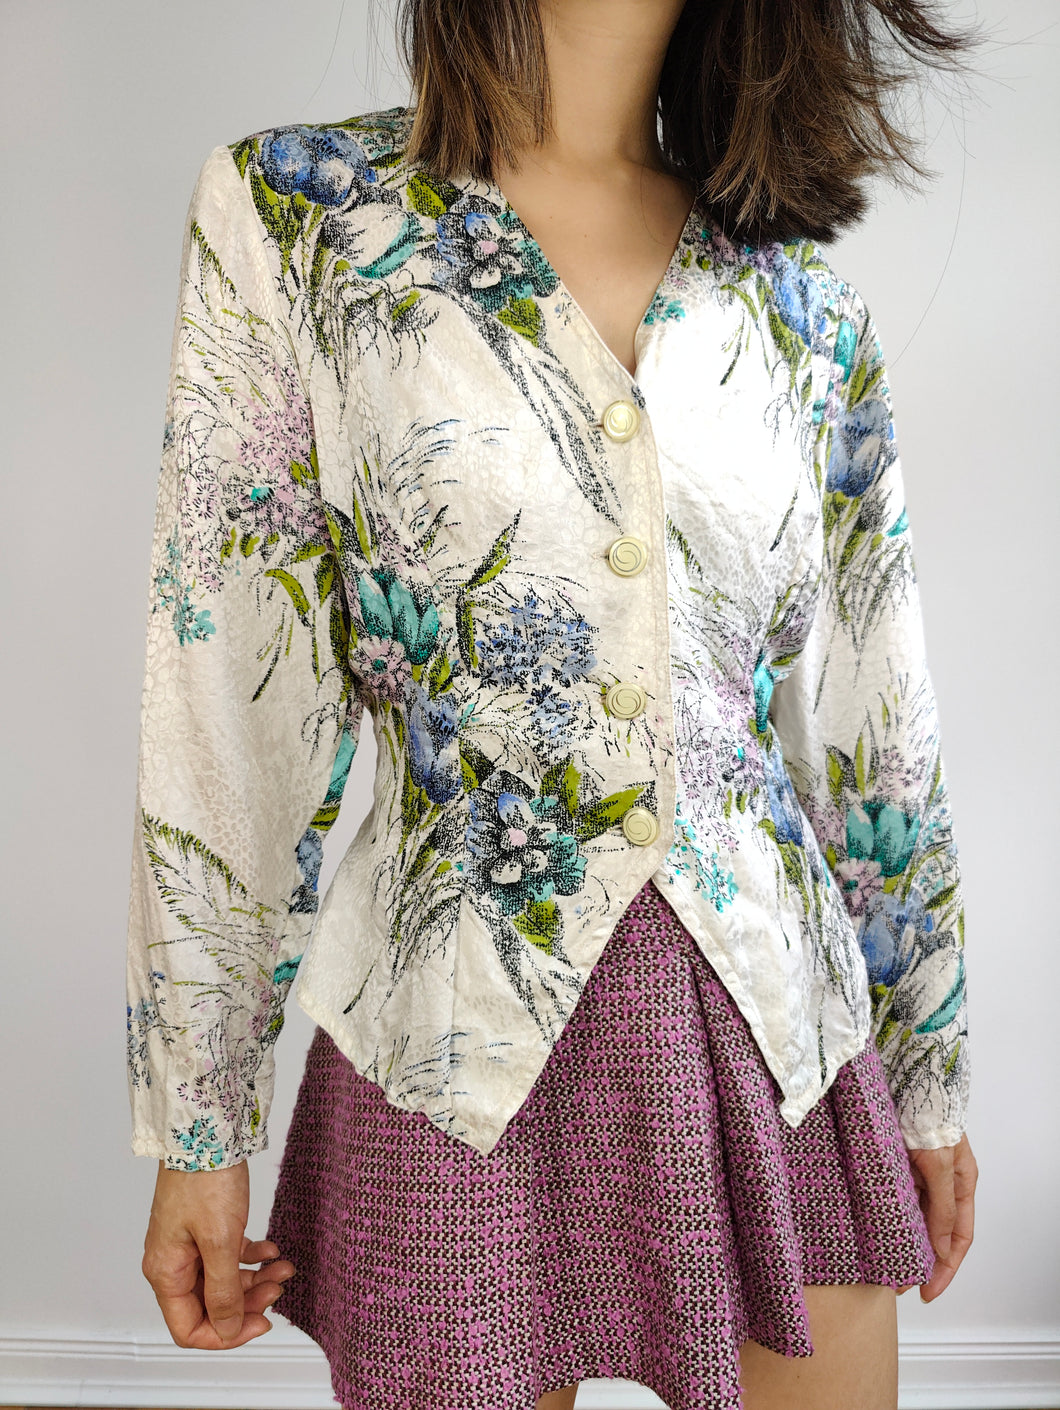 Die romantische weiße Bluse mit Blumenmuster | Feminine Bluse mit Vintage-Blumendruck, taillierte Taille, S